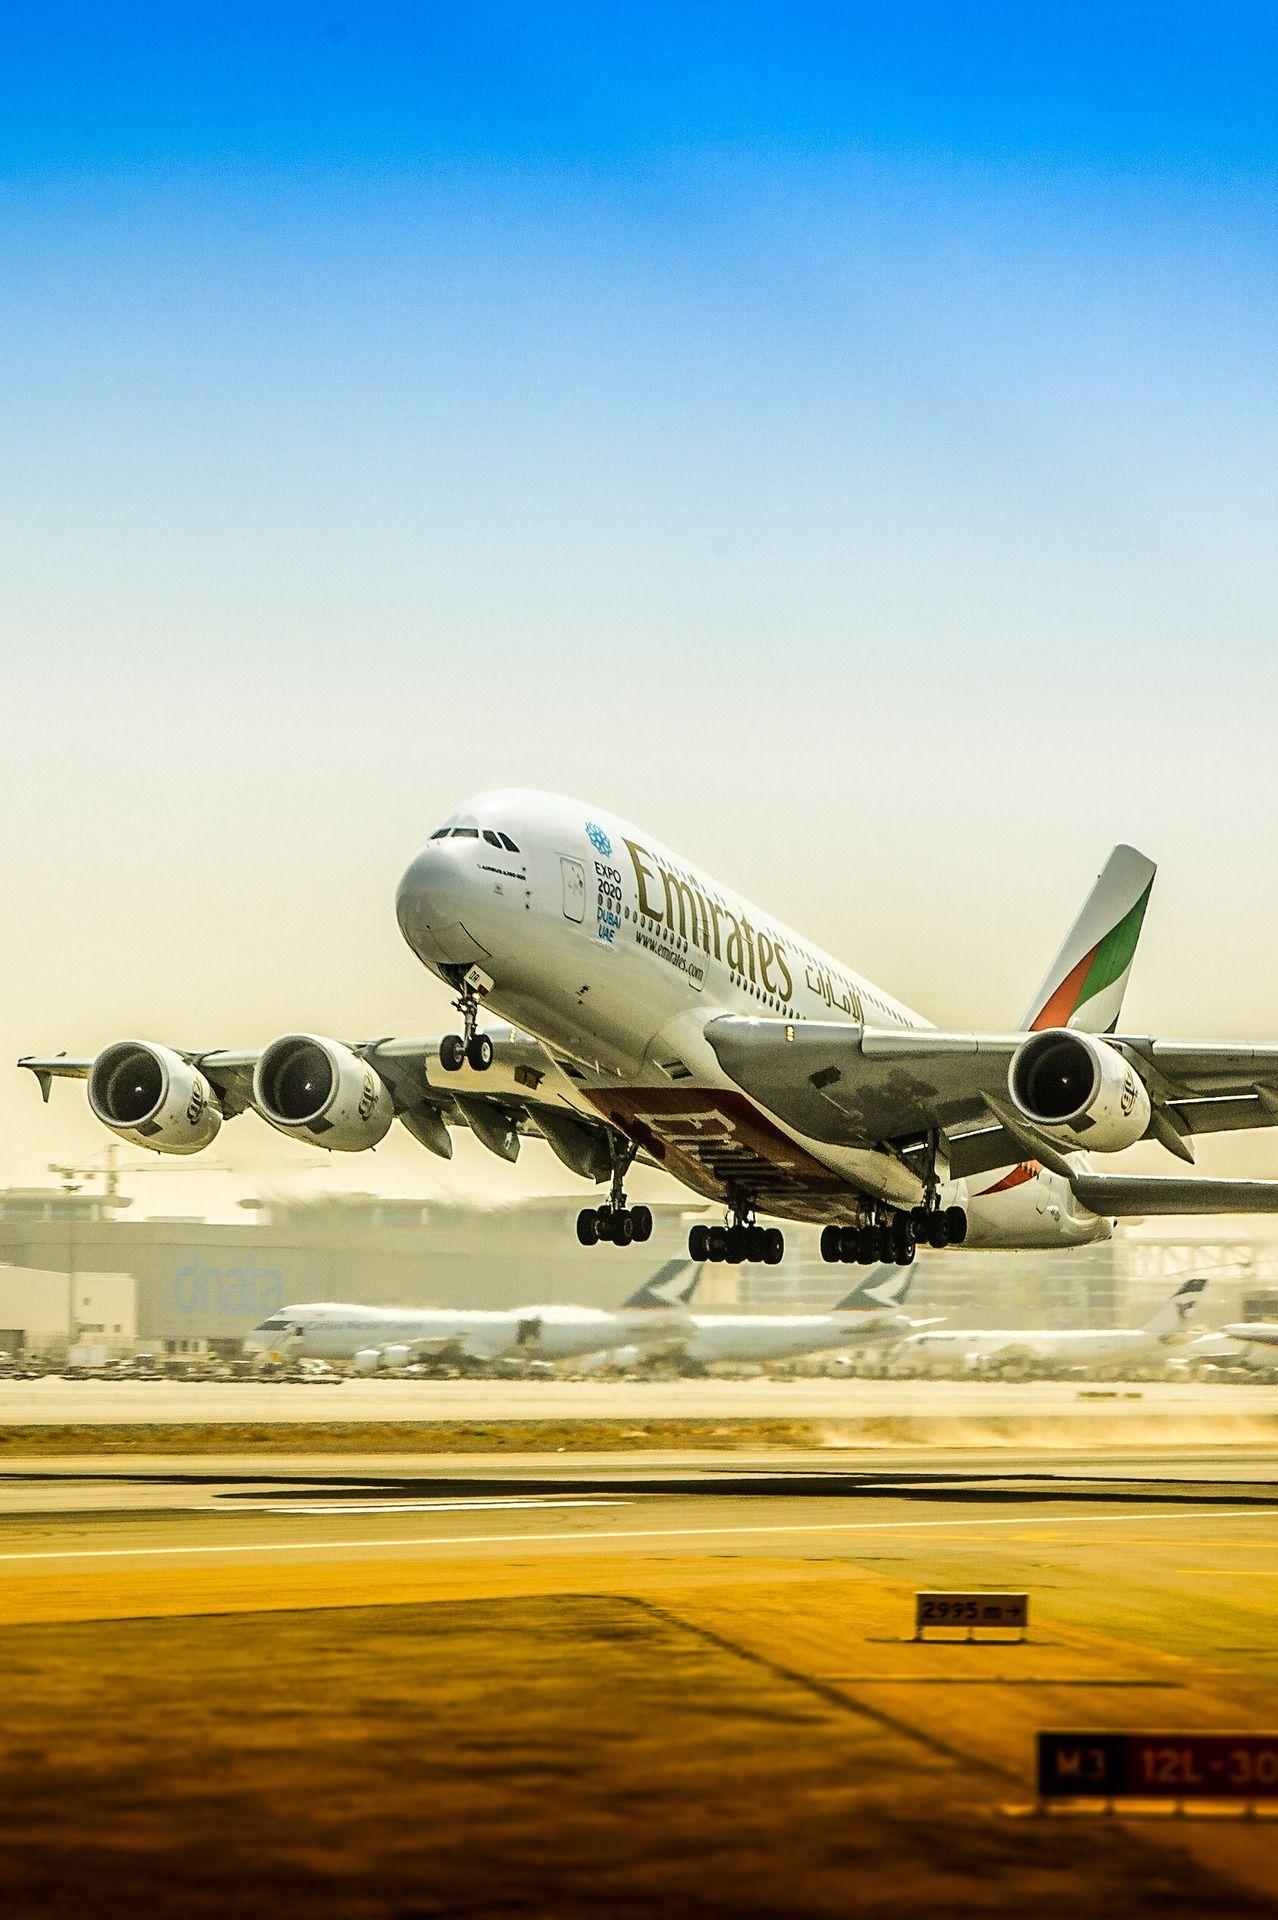 A380 takes into the sky. Jefe! El Avion! El Avion!